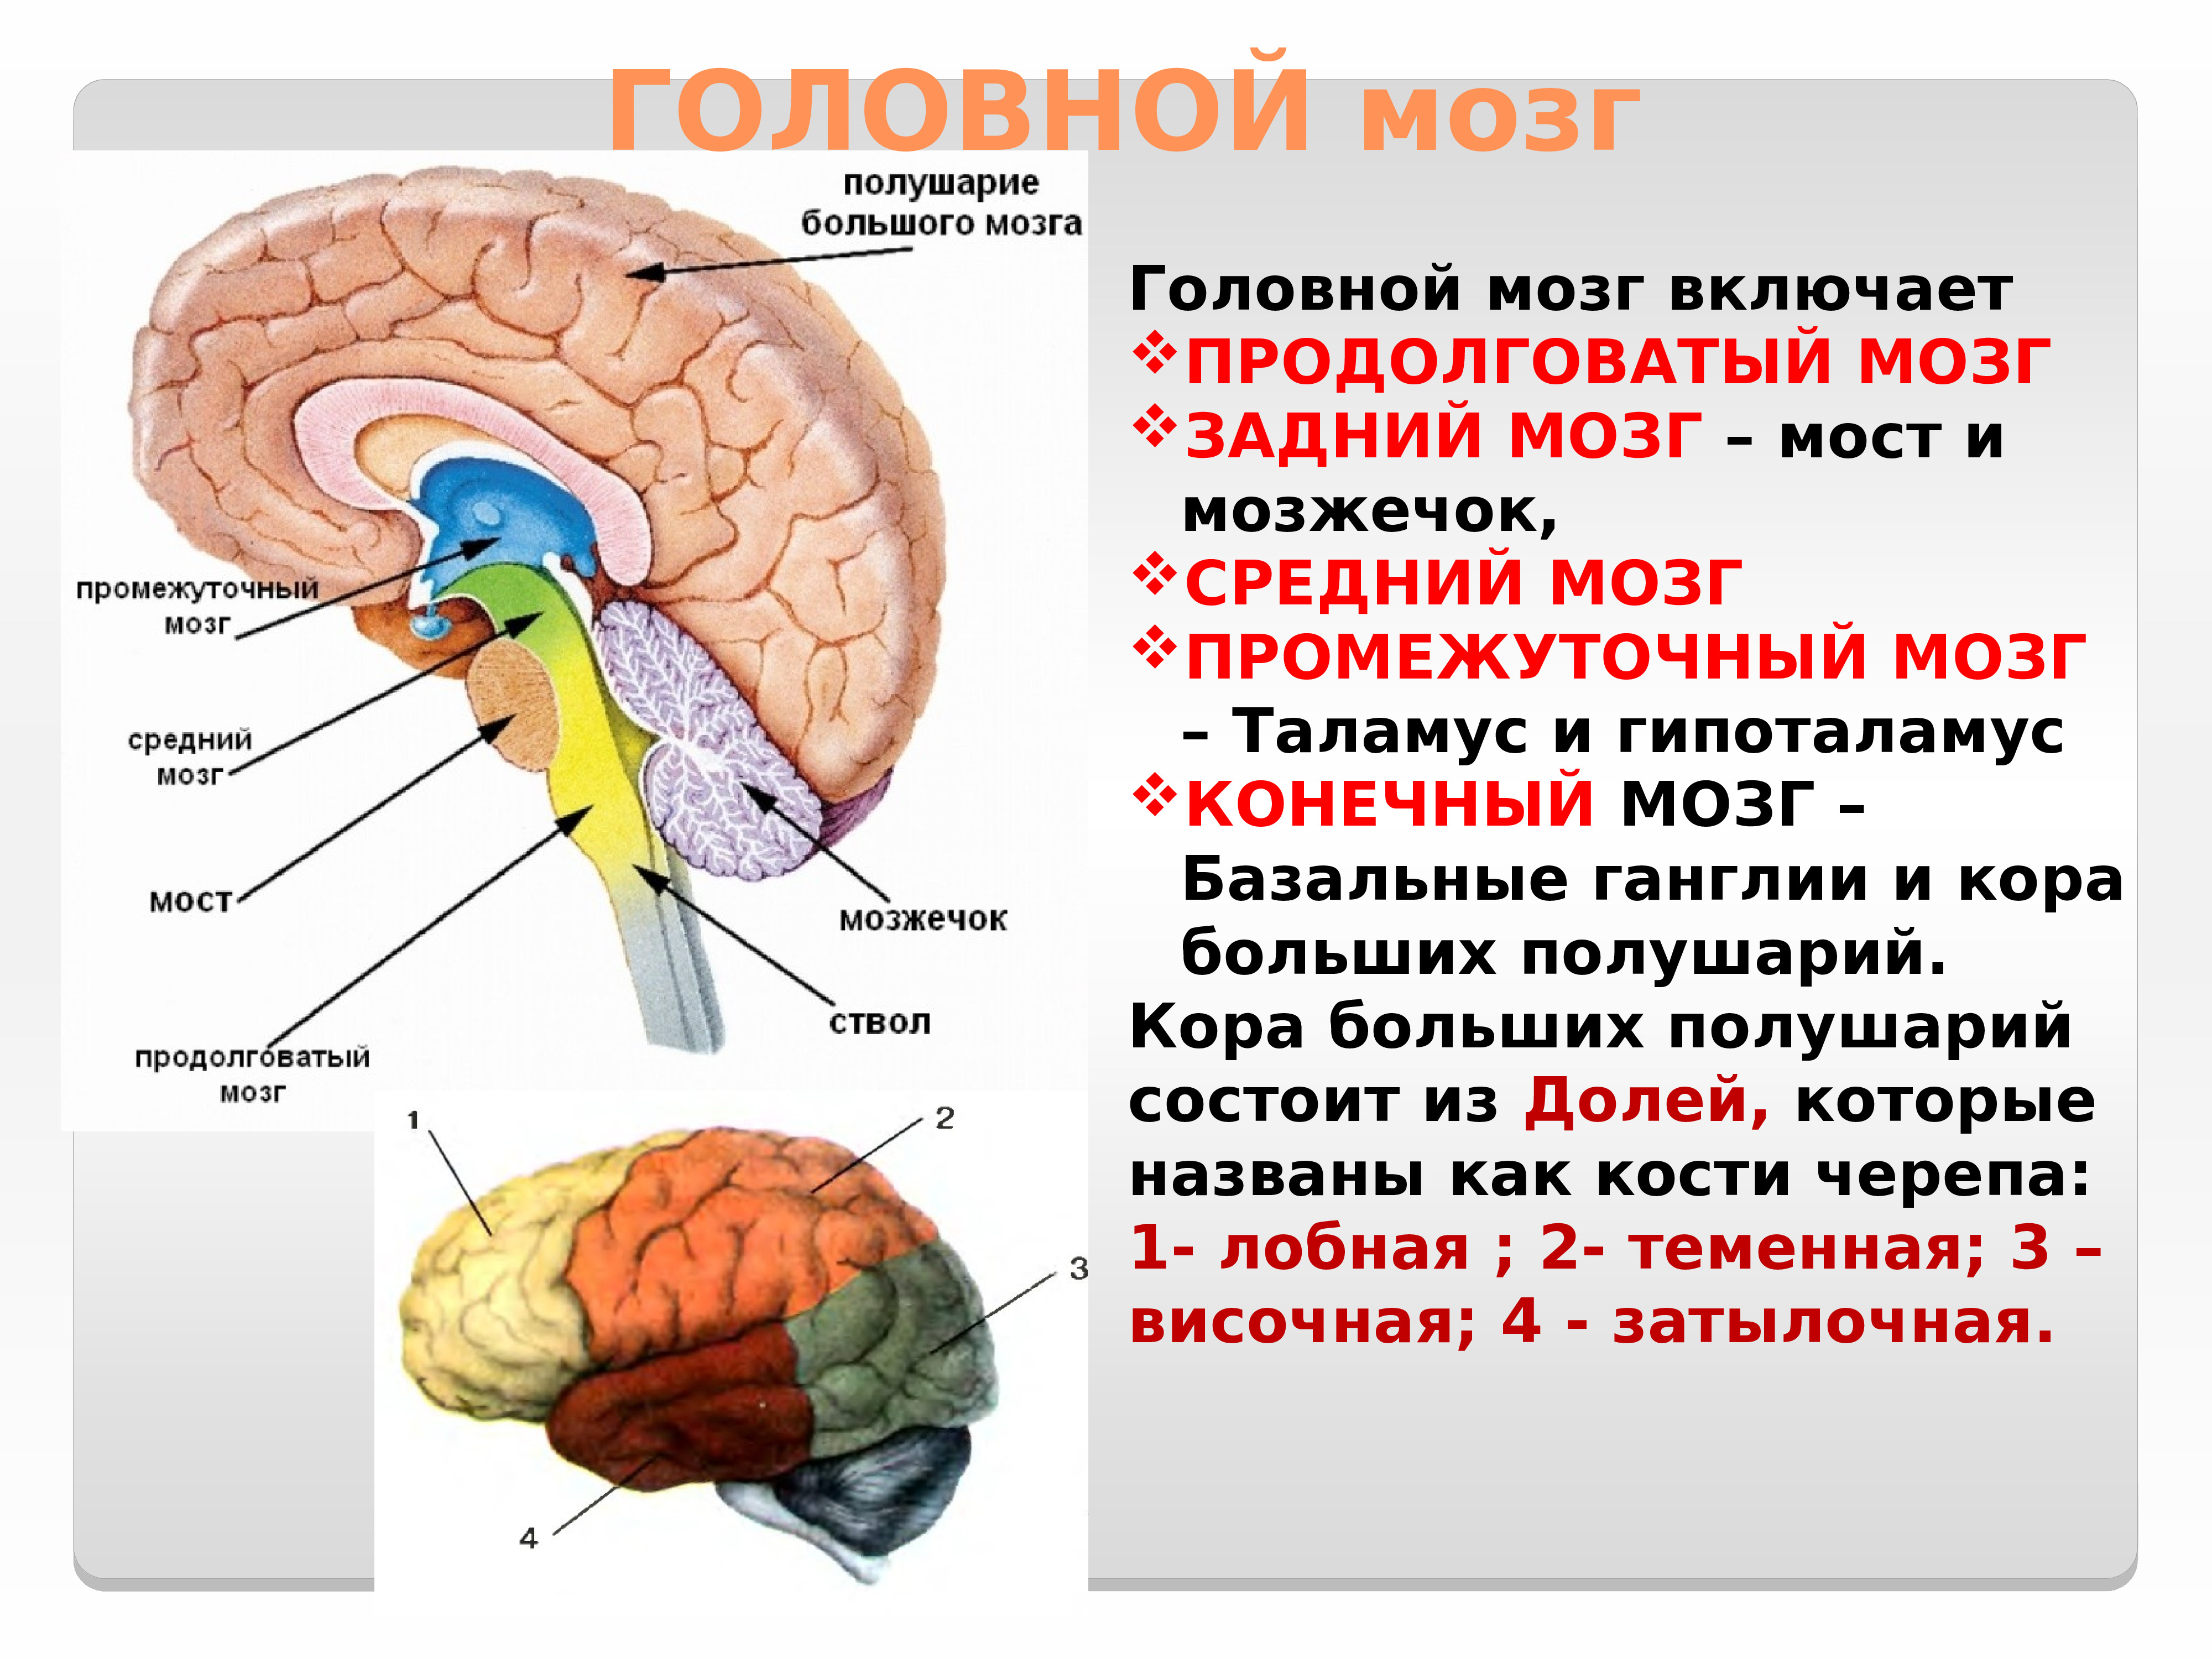 Нервные центры больших полушарий головного мозга. Отдел головного мозга продолговатый мозг промежуточный мозг. Головной мозг строение мозжечок мост. Строение головного мозга ствол мозжечок.